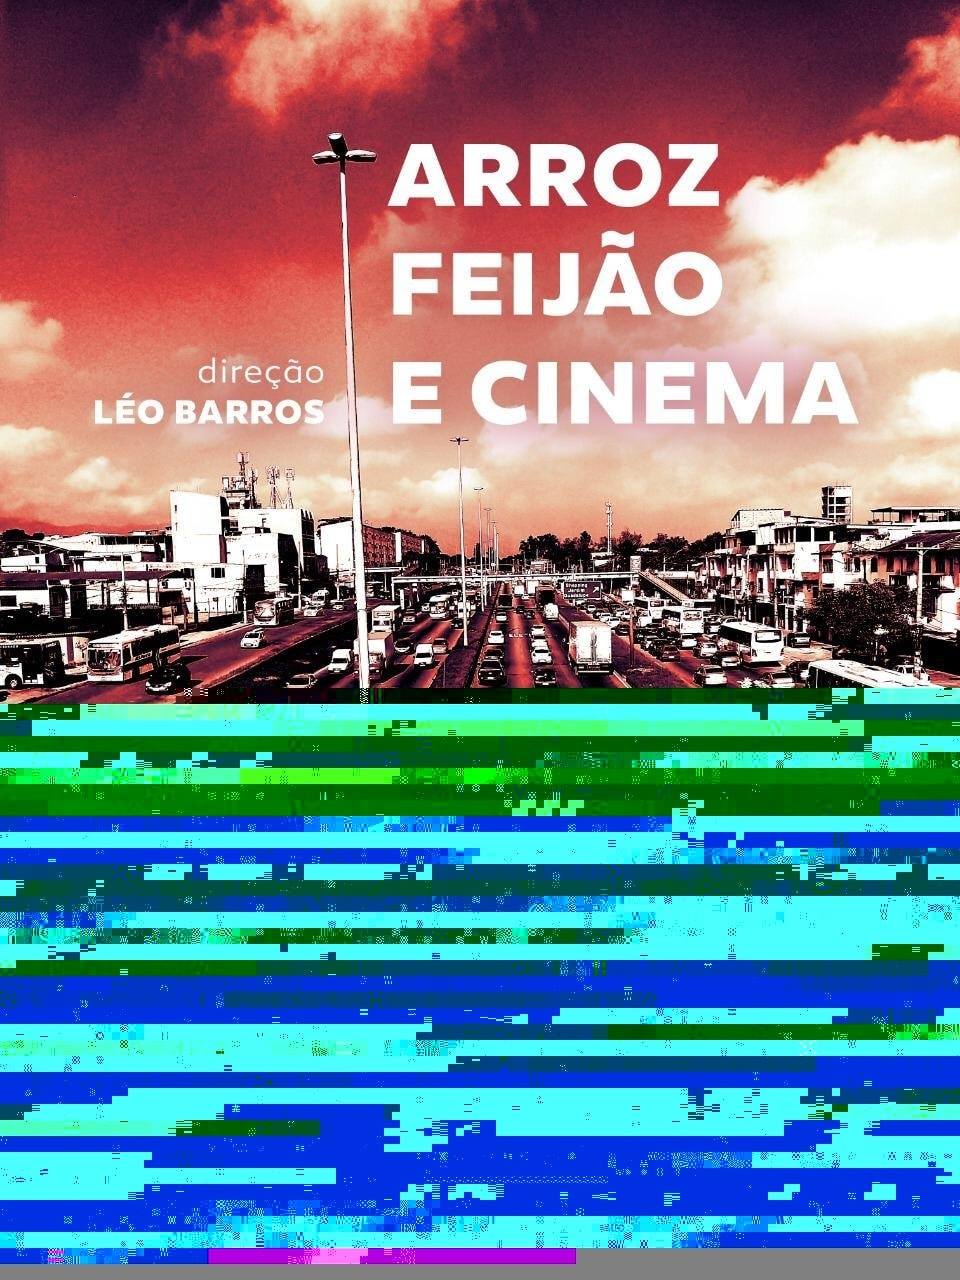 Arroz, Feijão e Cinema Curta Léo Barros Ponto Cine Pôster